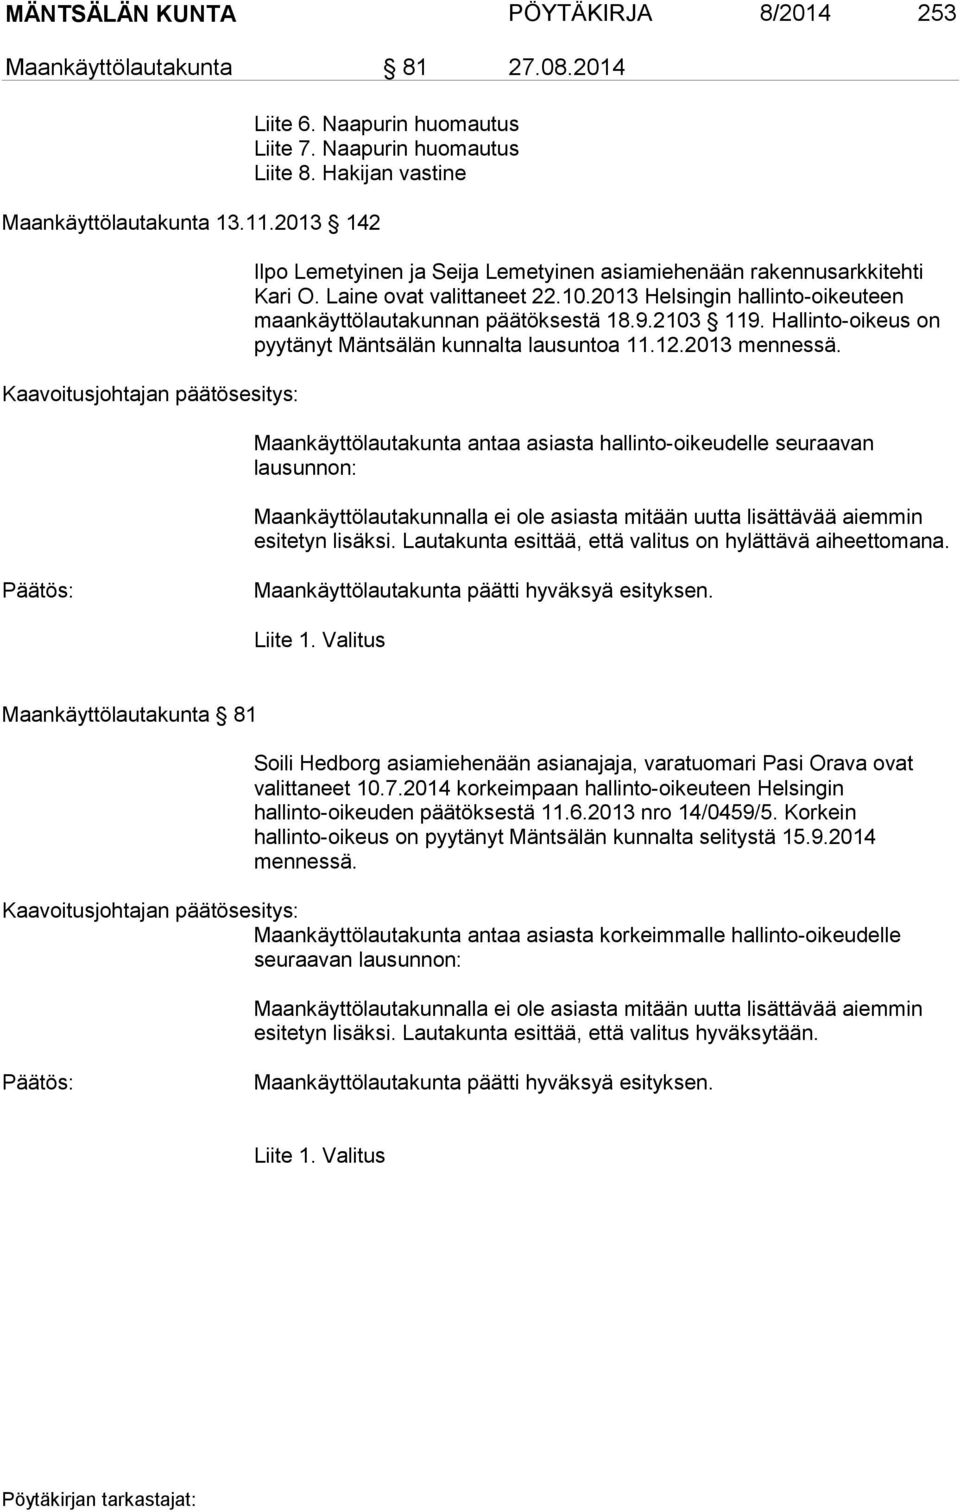 2013 Helsingin hallinto-oikeuteen maankäyttölautakunnan päätöksestä 18.9.2103 119. Hallinto-oikeus on pyytänyt Mäntsälän kunnalta lausuntoa 11.12.2013 mennessä.